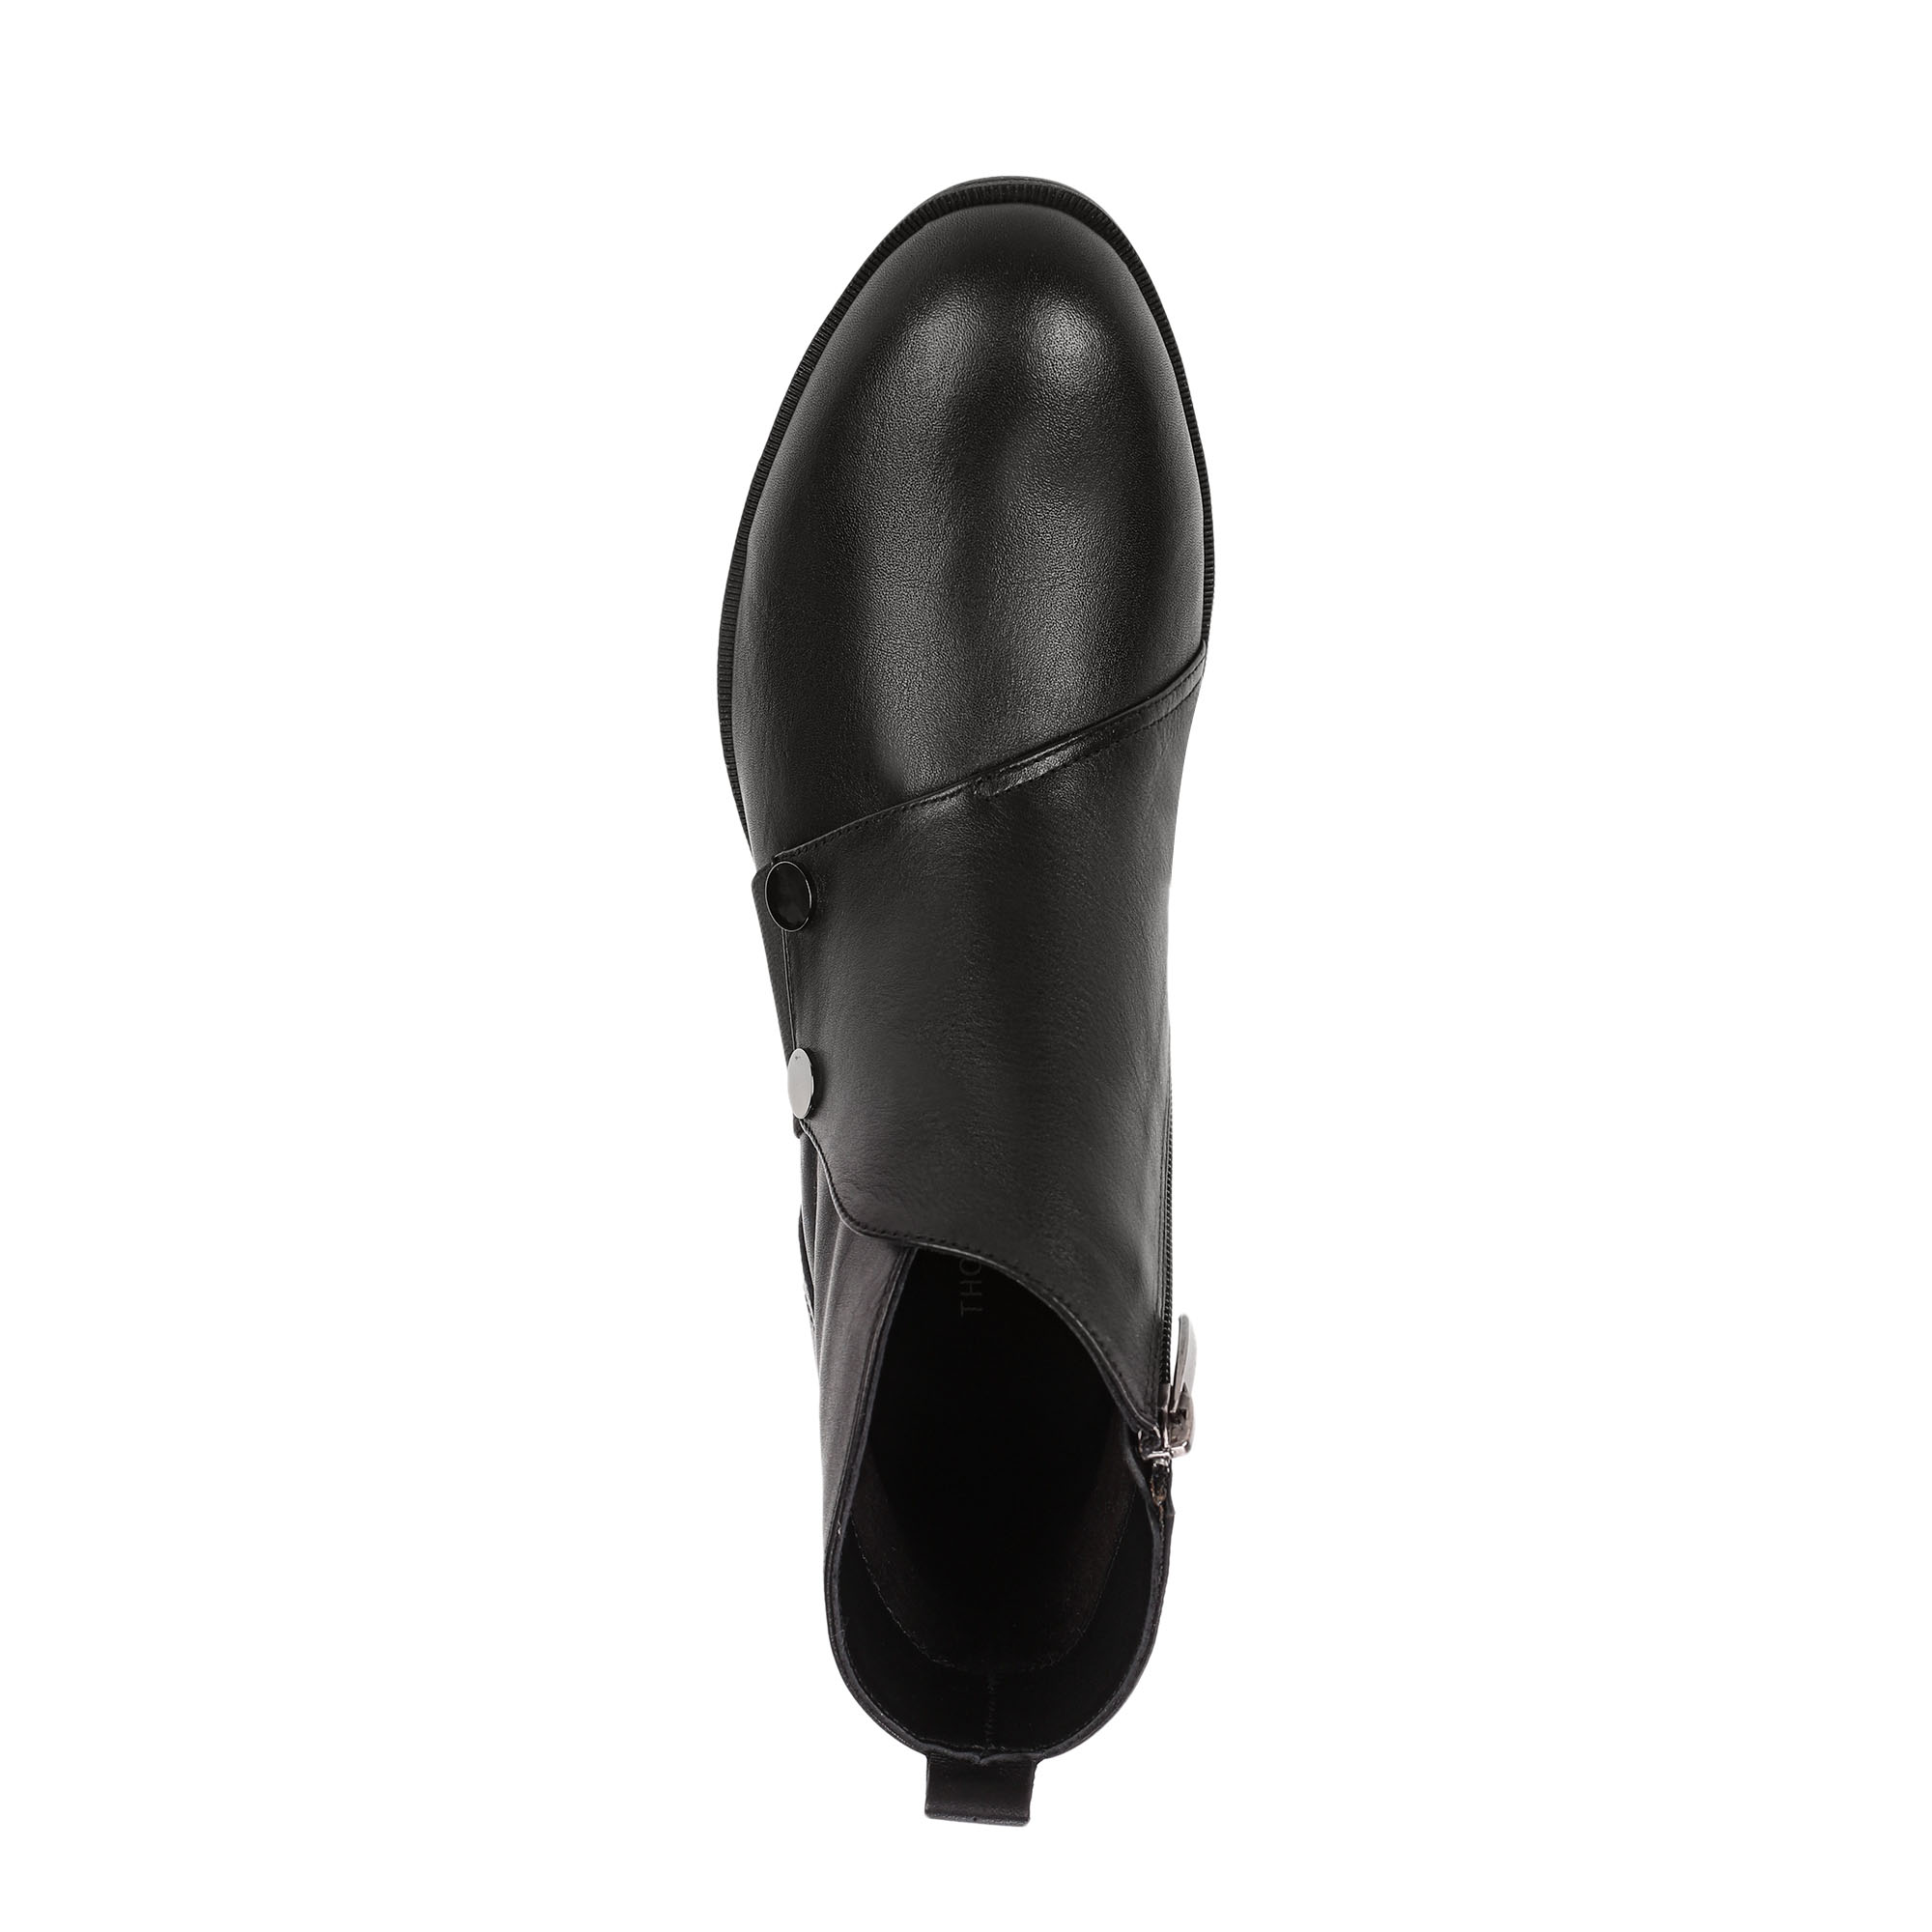 Ботинки Thomas Munz 539-014A-2102, цвет черный, размер 39 - фото 5